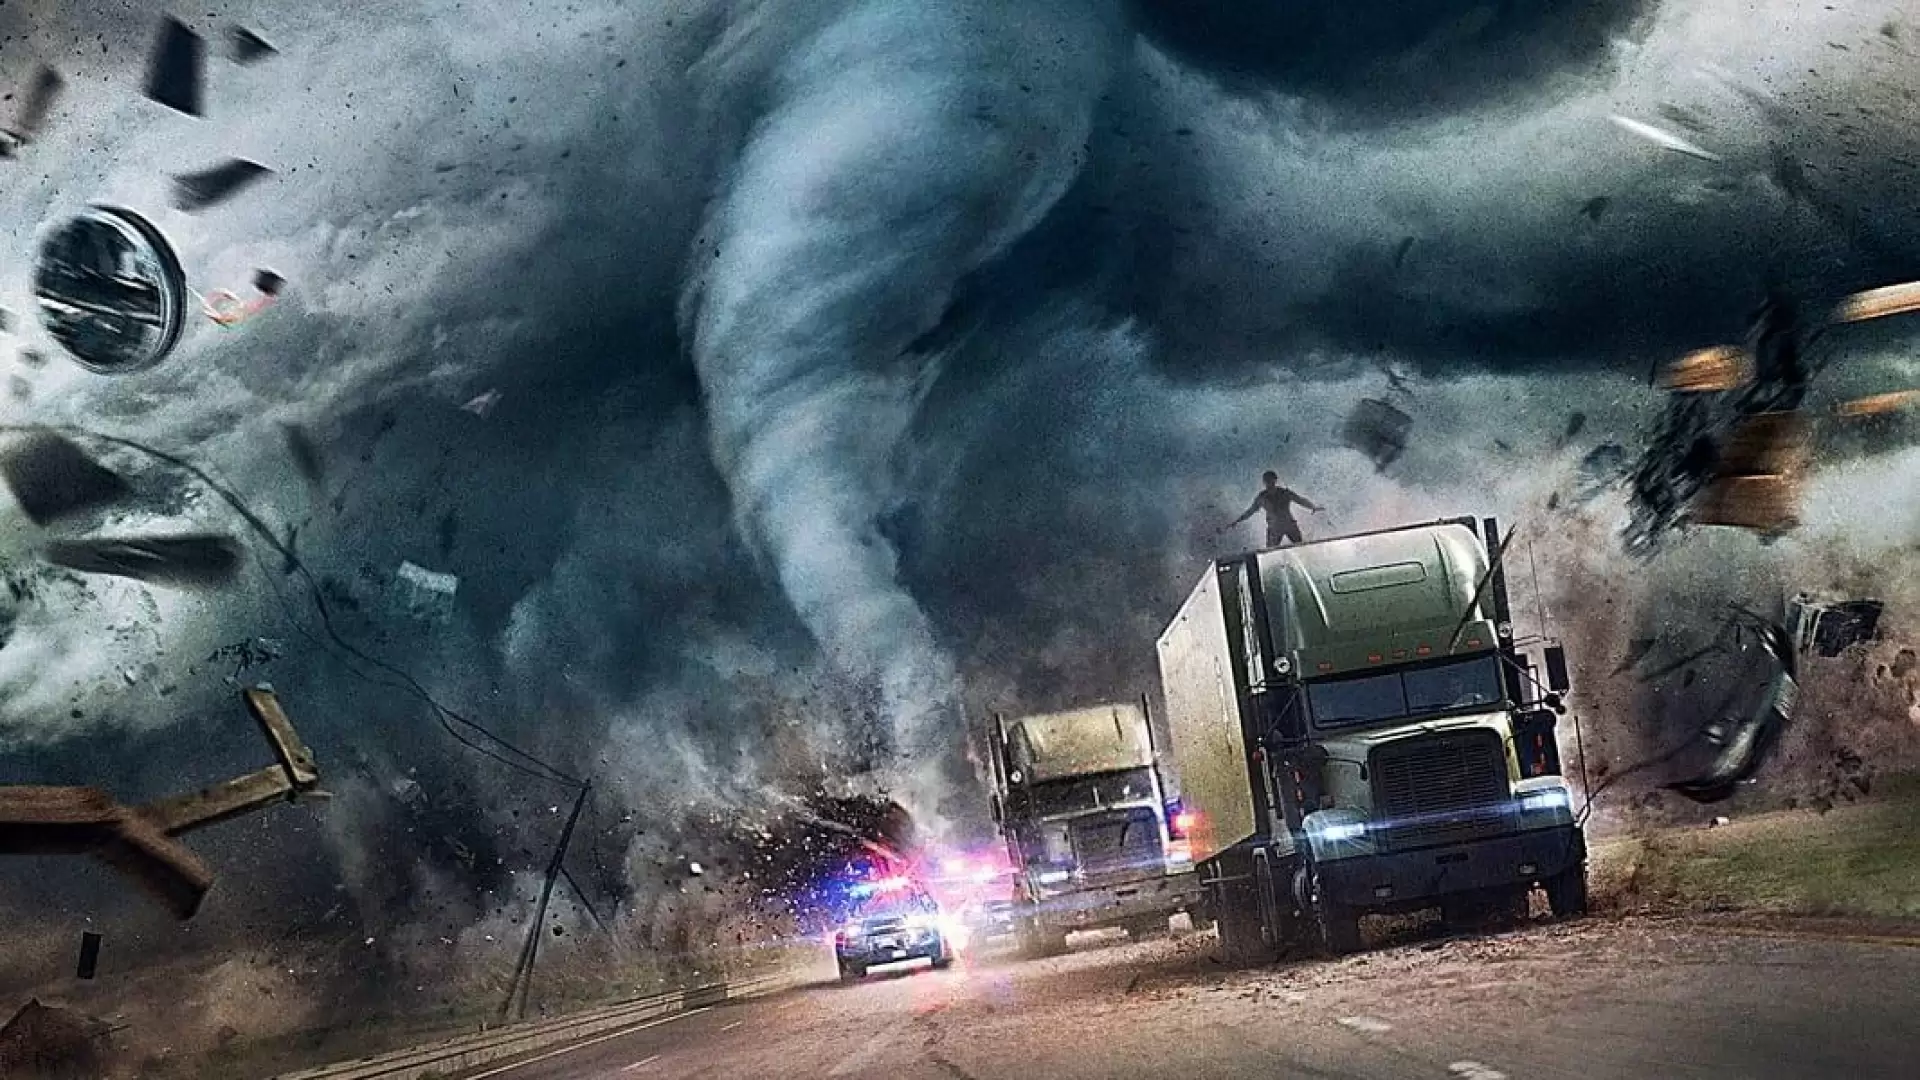 دانلود فیلم The Hurricane Heist 2018 (سرقت طوفانی) با زیرنویس فارسی و تماشای آنلاین